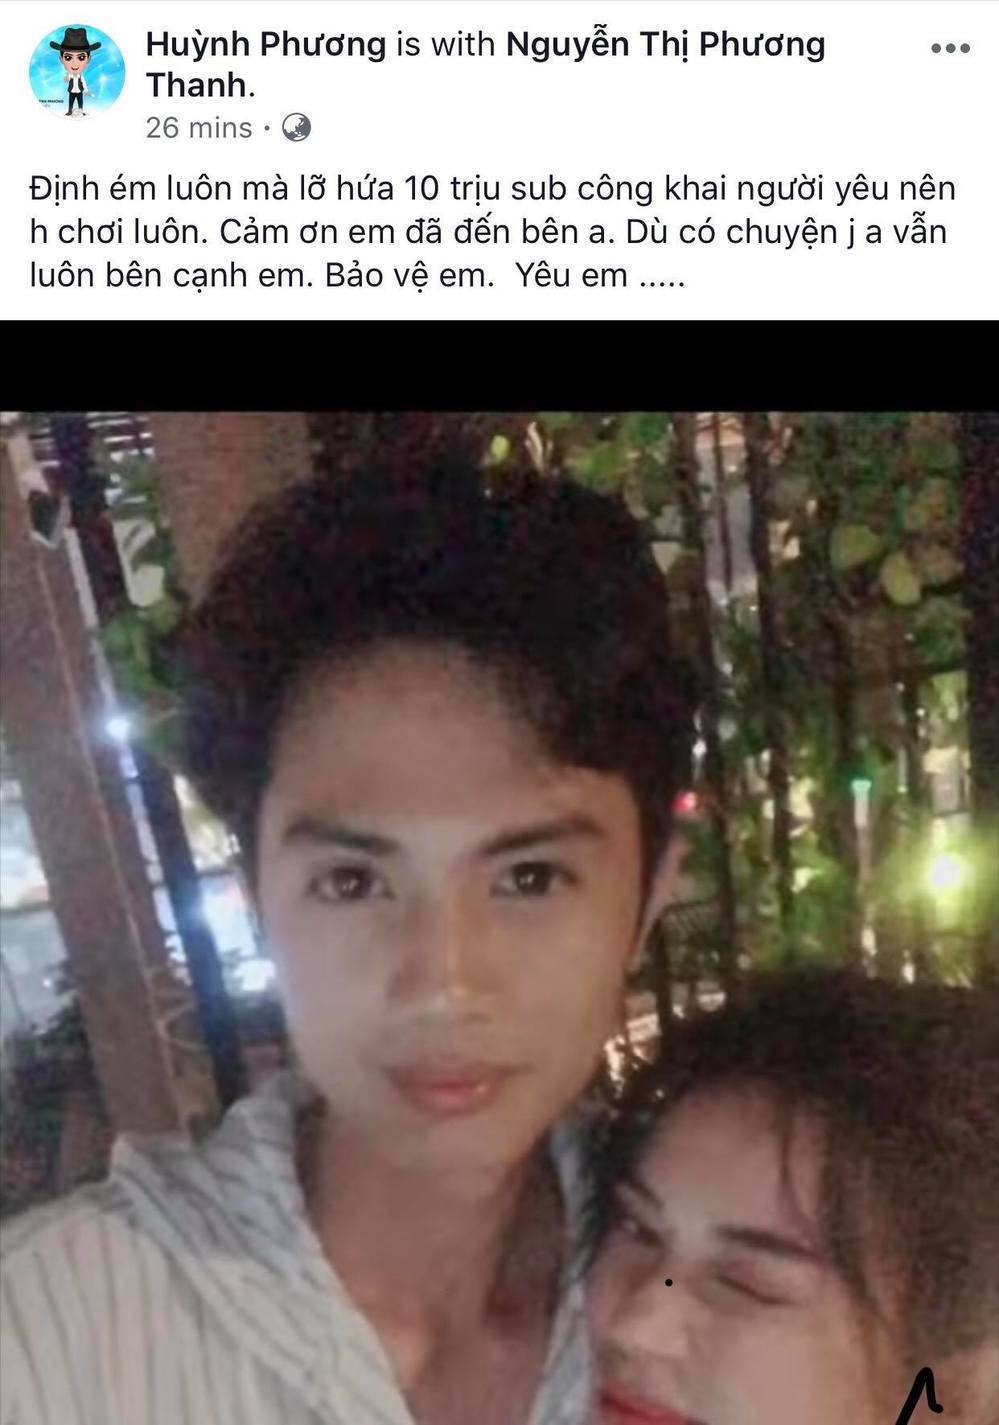 Độc quyền: Sĩ Thanh xác nhận hẹn hò Huỳnh Phương được 3 tháng